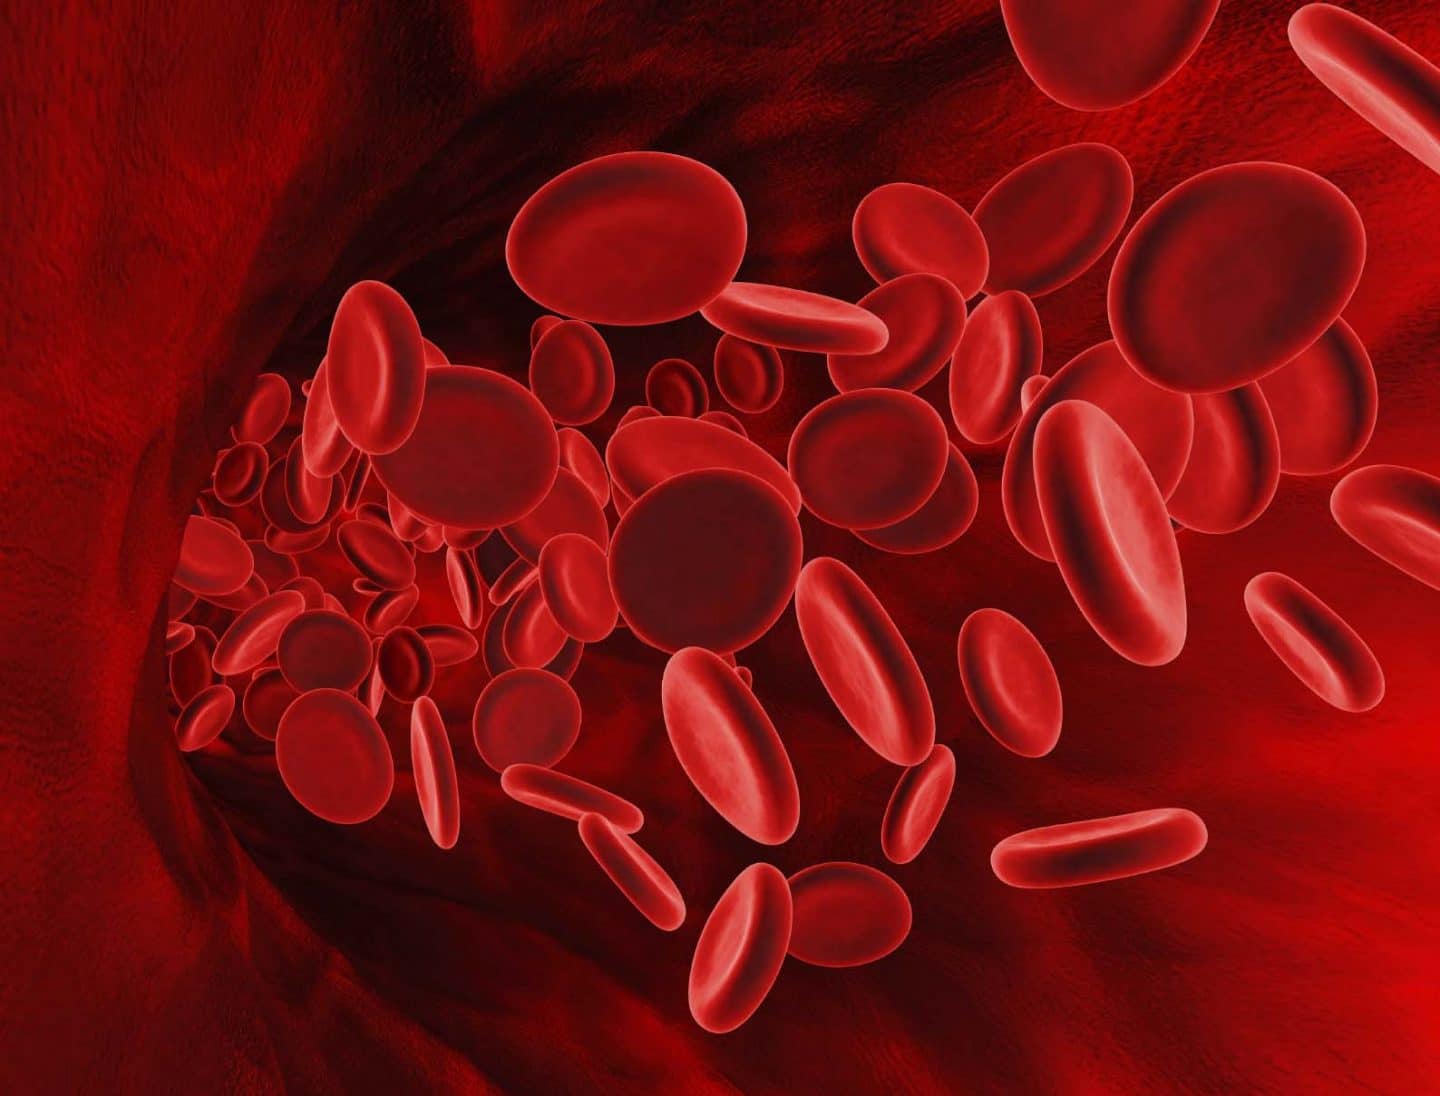 ثمانية أيام فقط! ... تلك هي المدة التي تستغرقها عملية تحويل خلايا الجلد إلى خلايا دم حمراء!